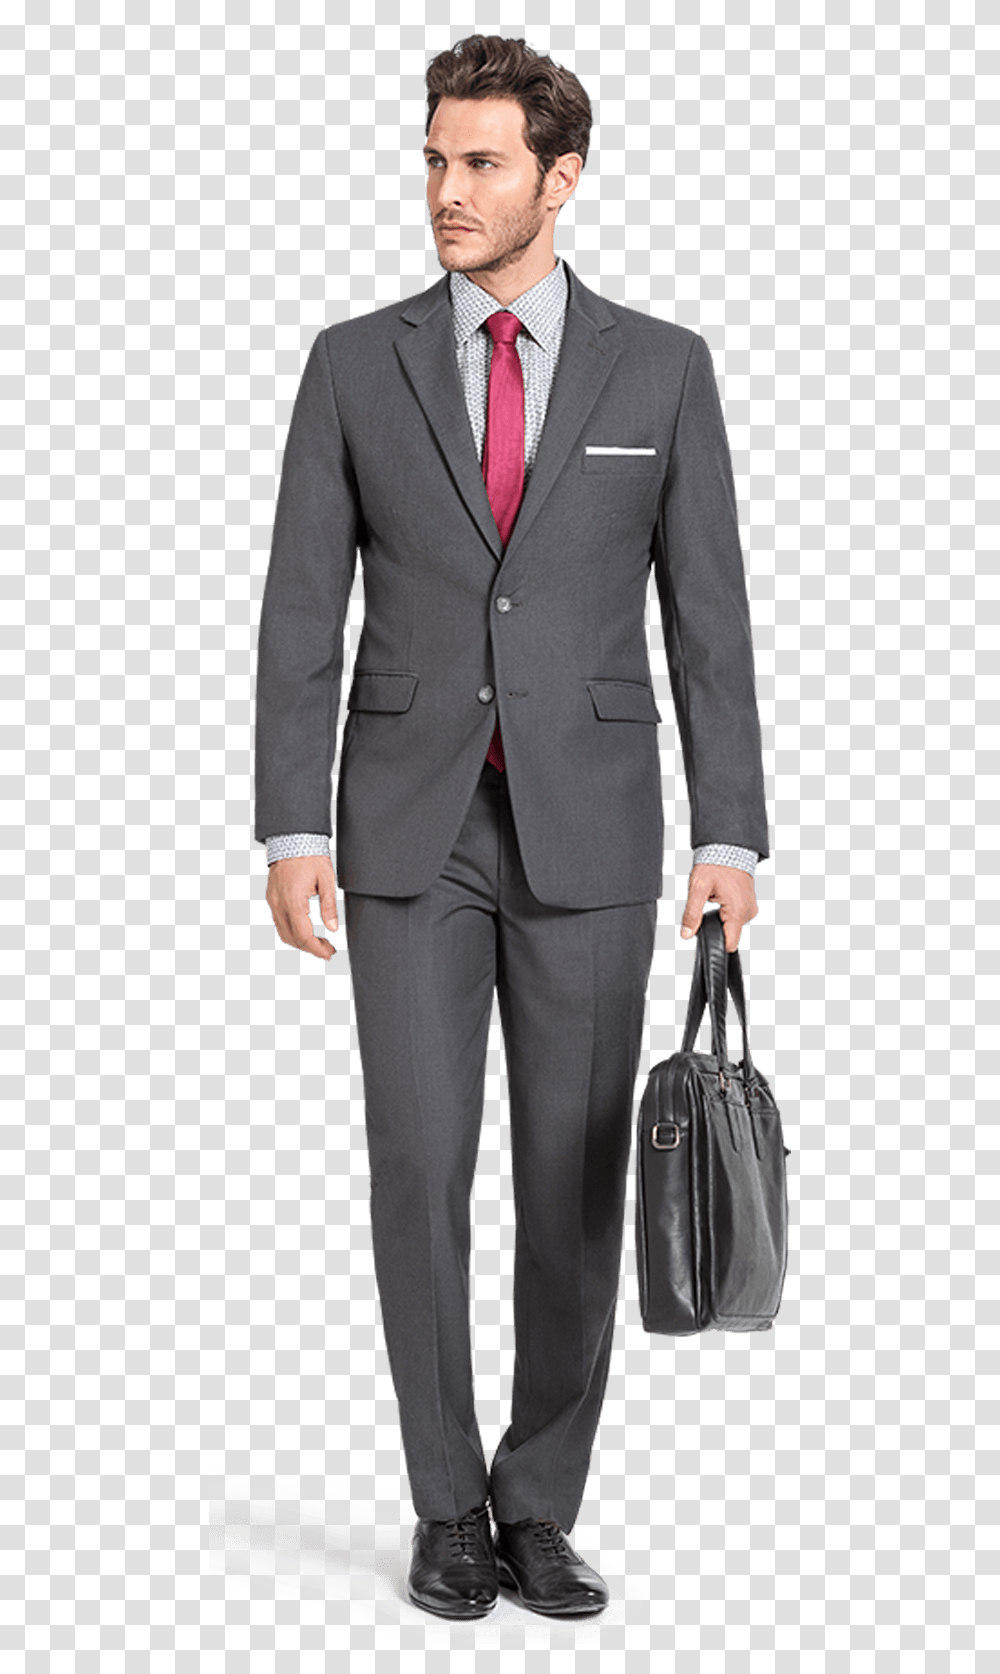 Business Suit Traje Gris Hombre Moreno Hd Coat Pant In, Apparel, Tie, Accessories Transparent Png